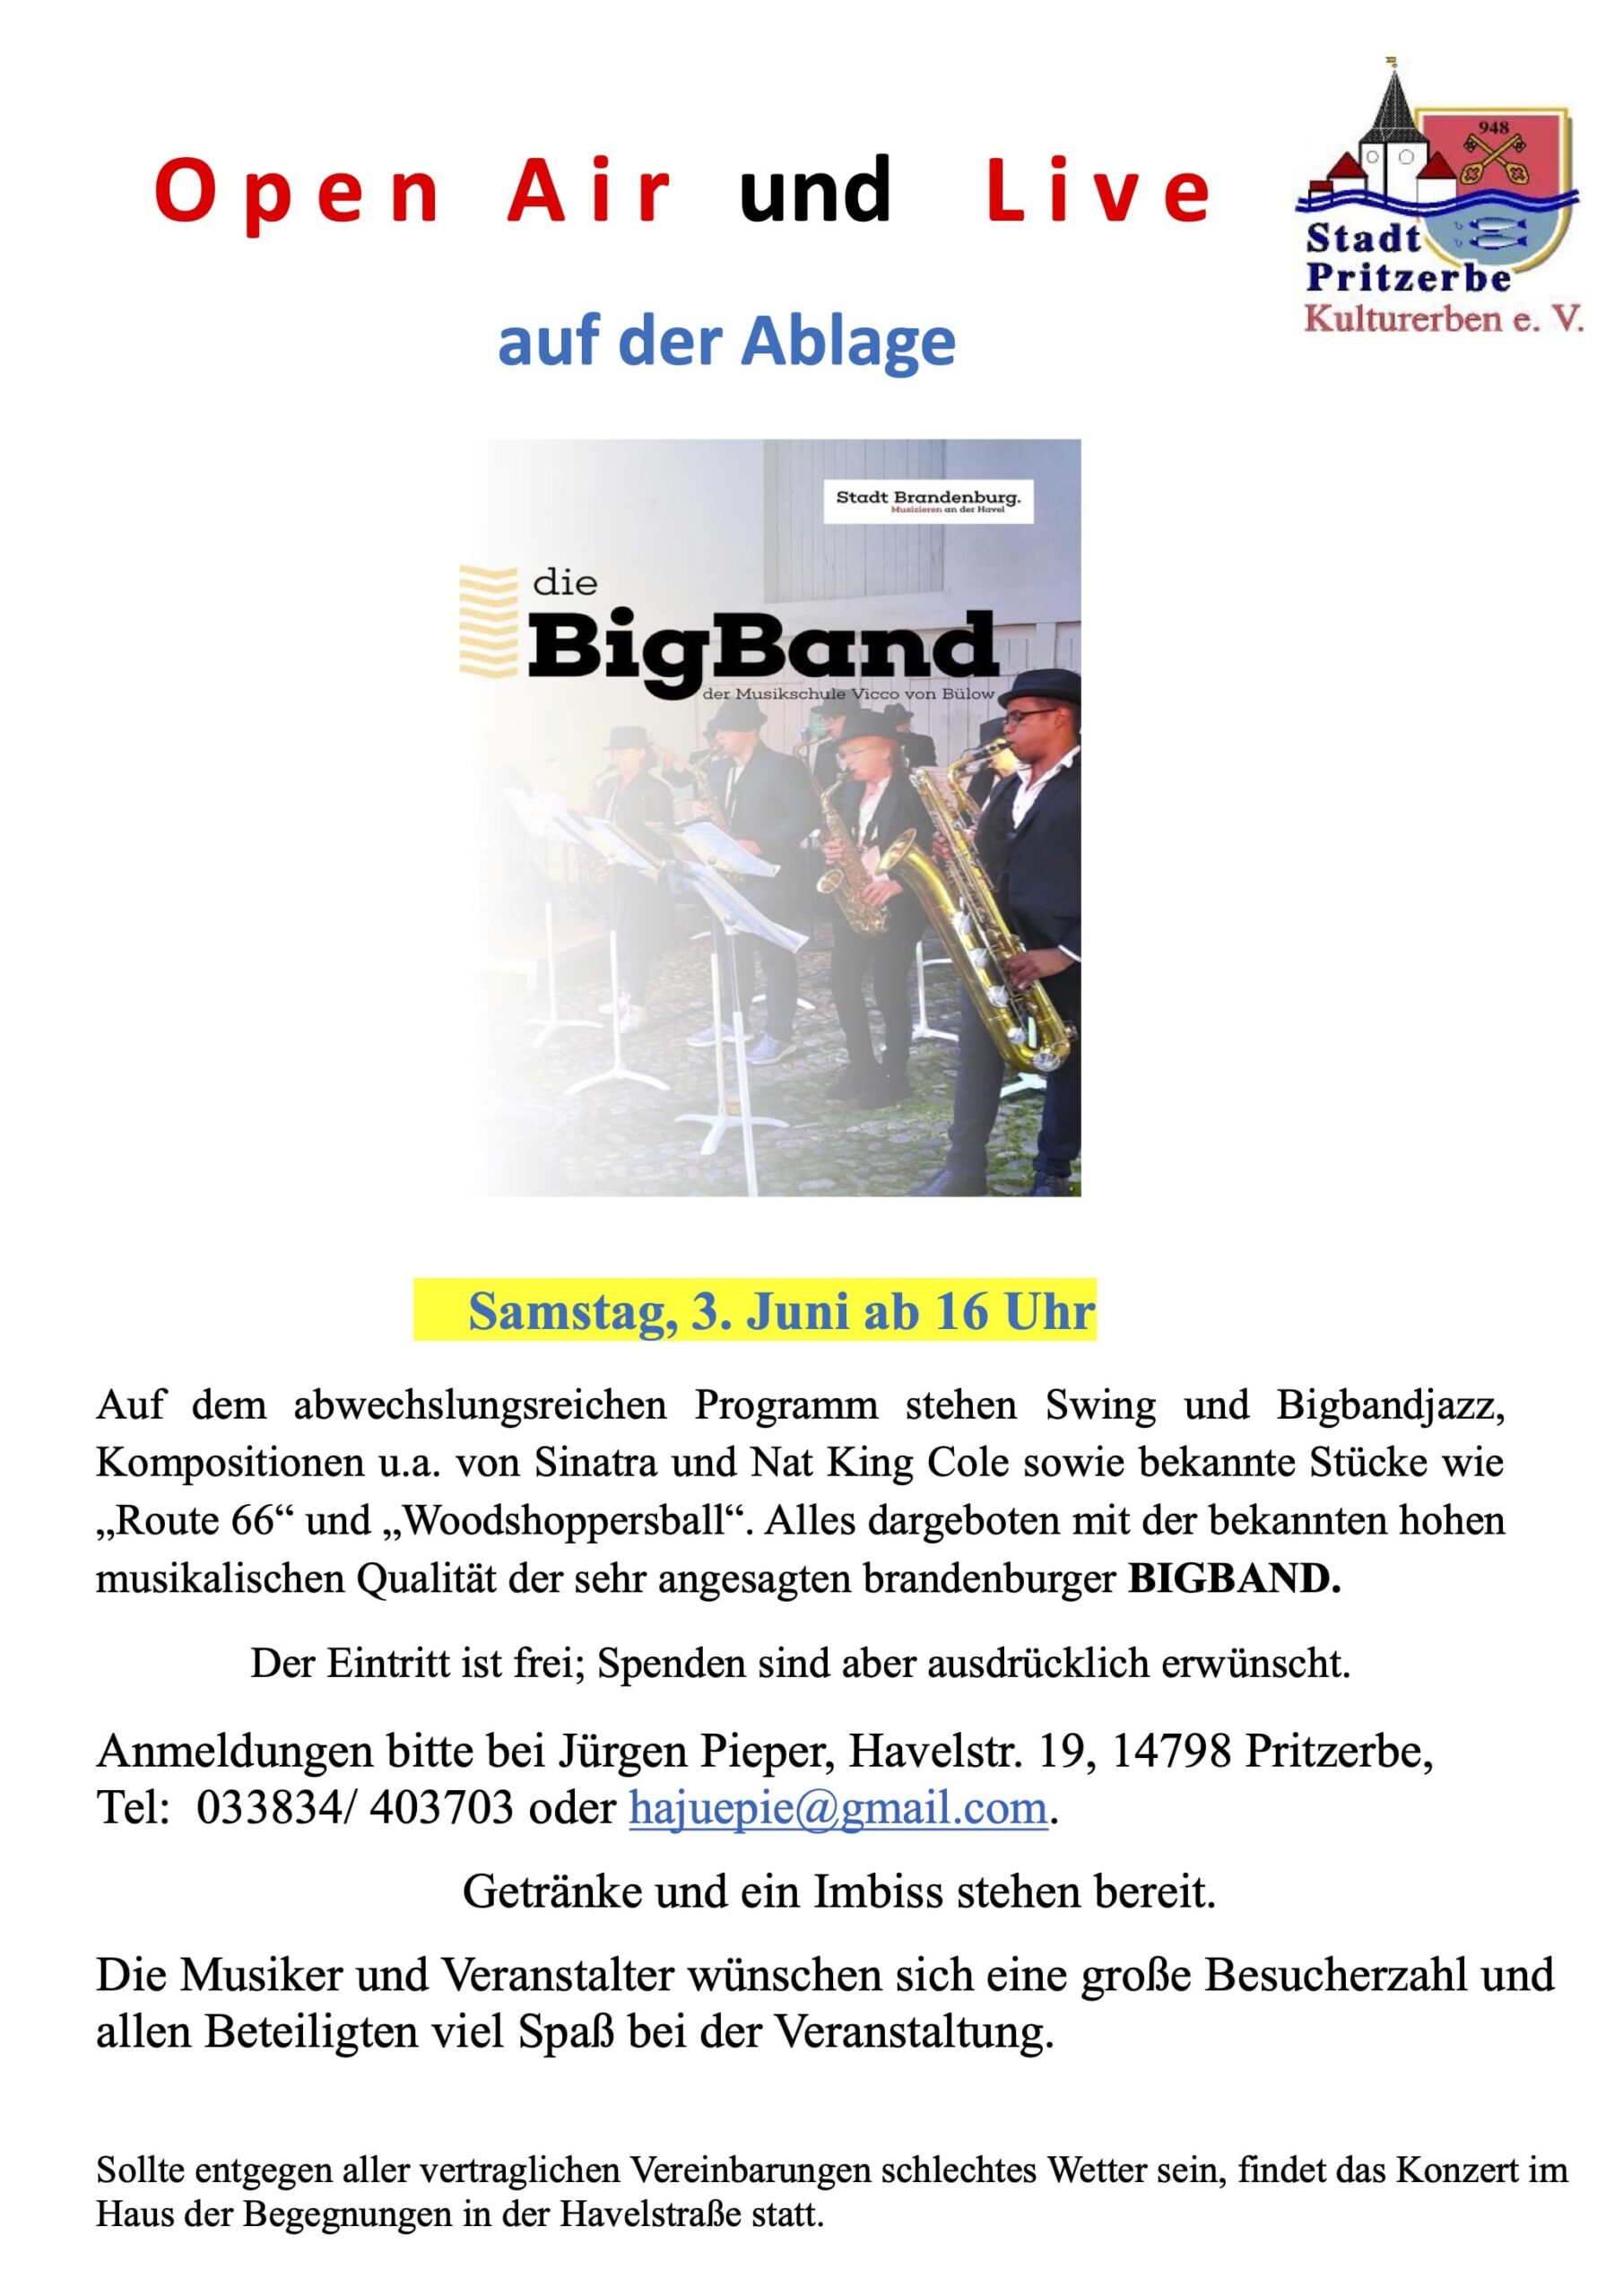 brandenburger-bigband-openair-pritzerbe